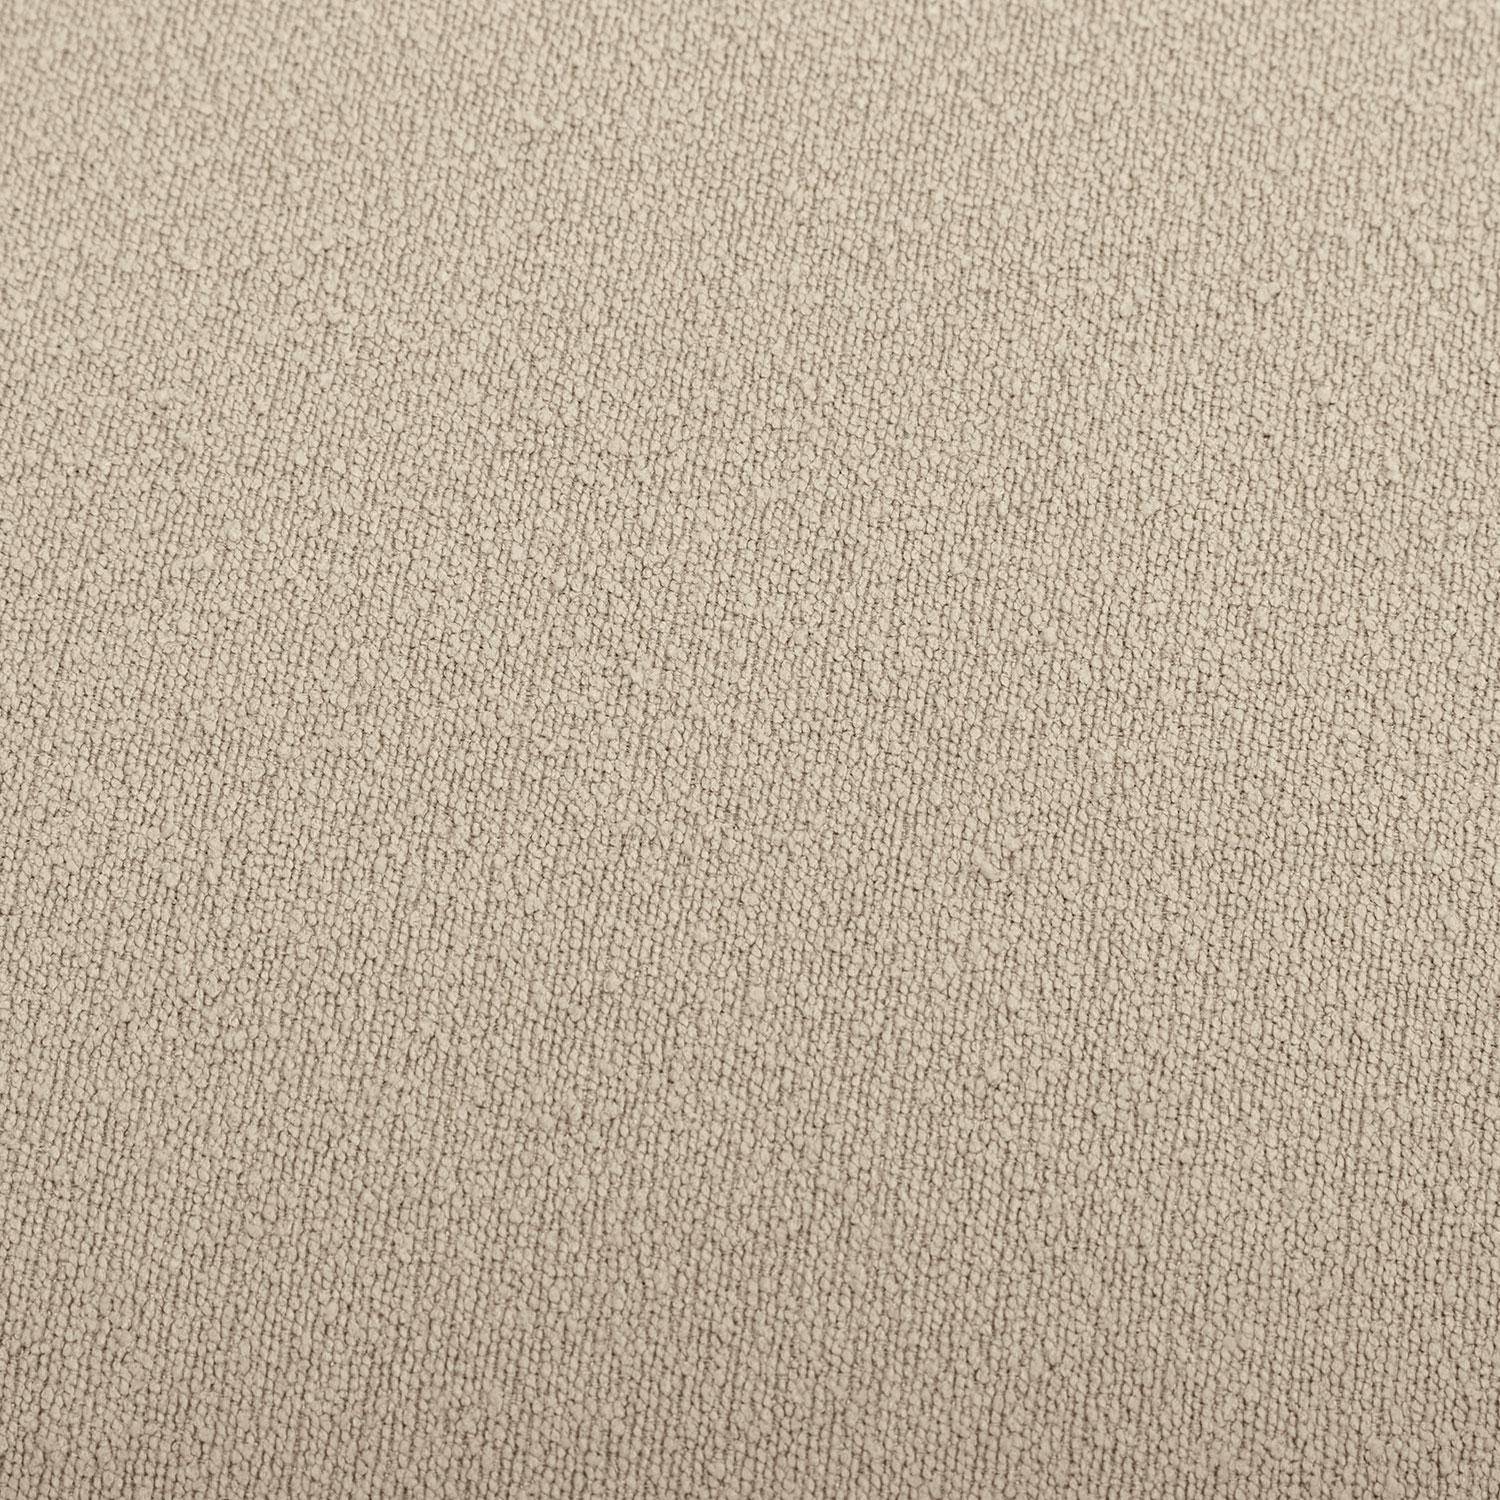 sgabello, poggiapiedi a forma di ciottolo in tessuto beige, TAO L 60 x P 44 x H 40 cm Photo7